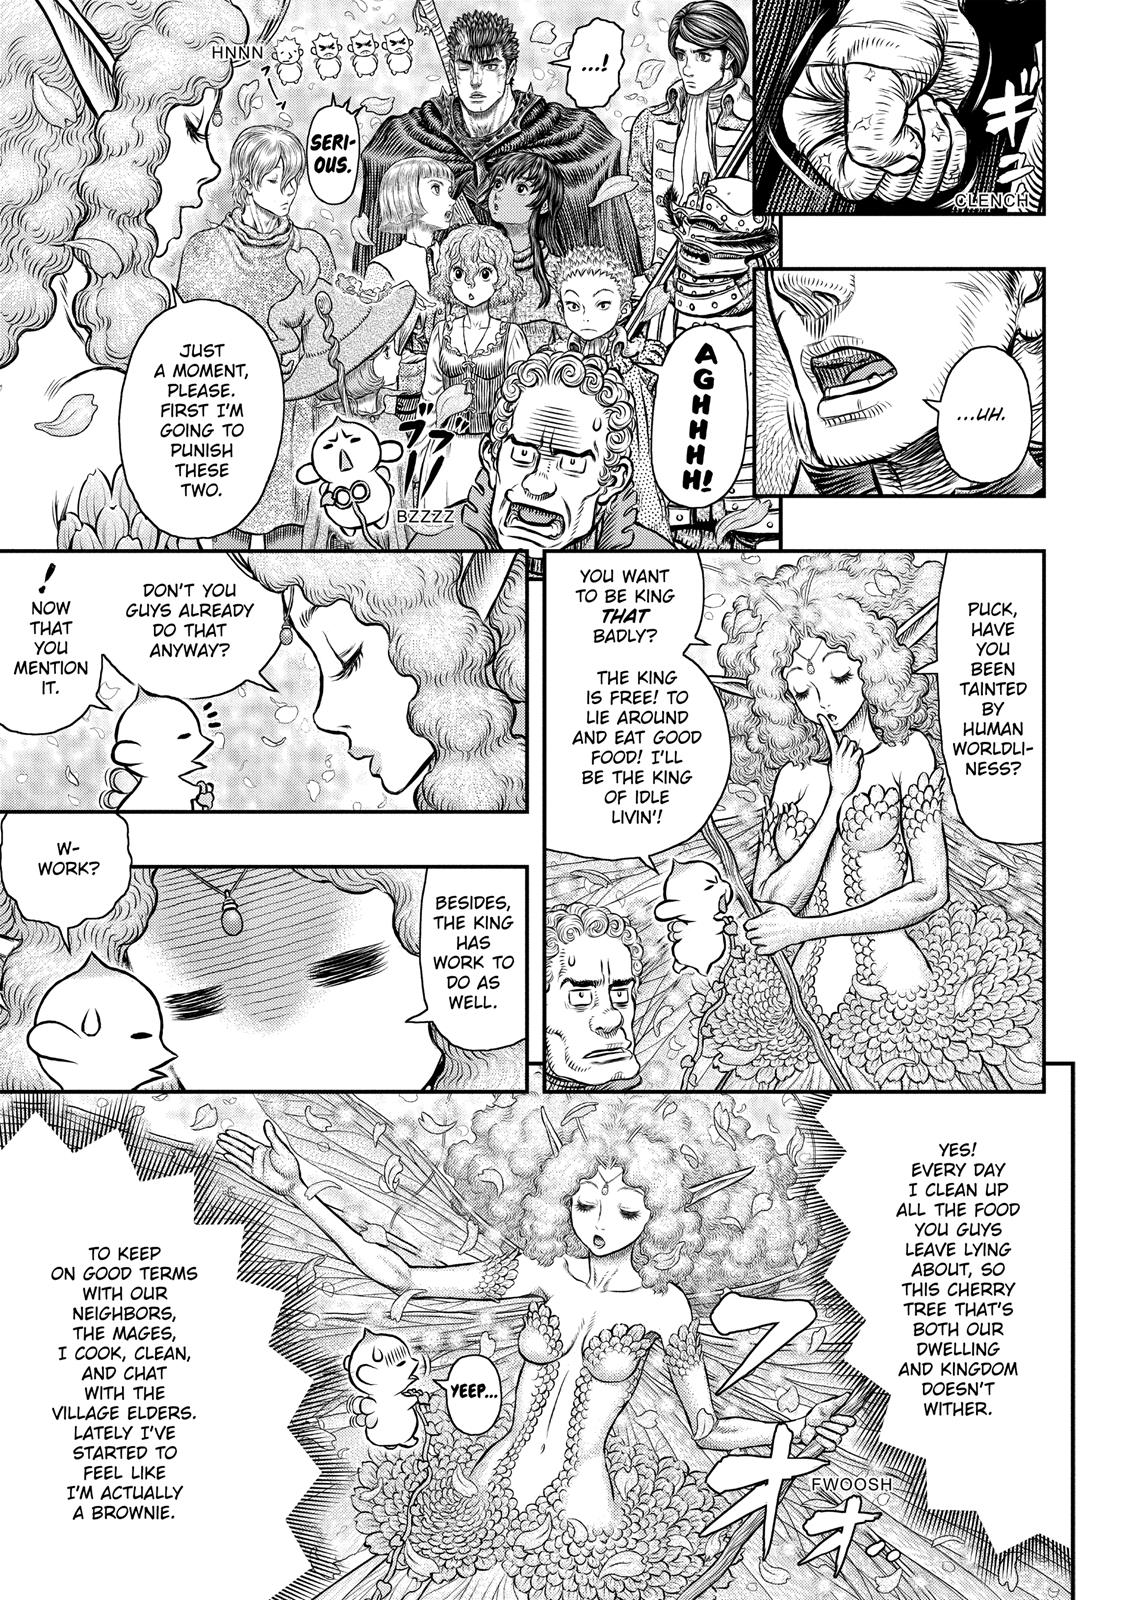 Berserk Manga Chapter 347 image 04